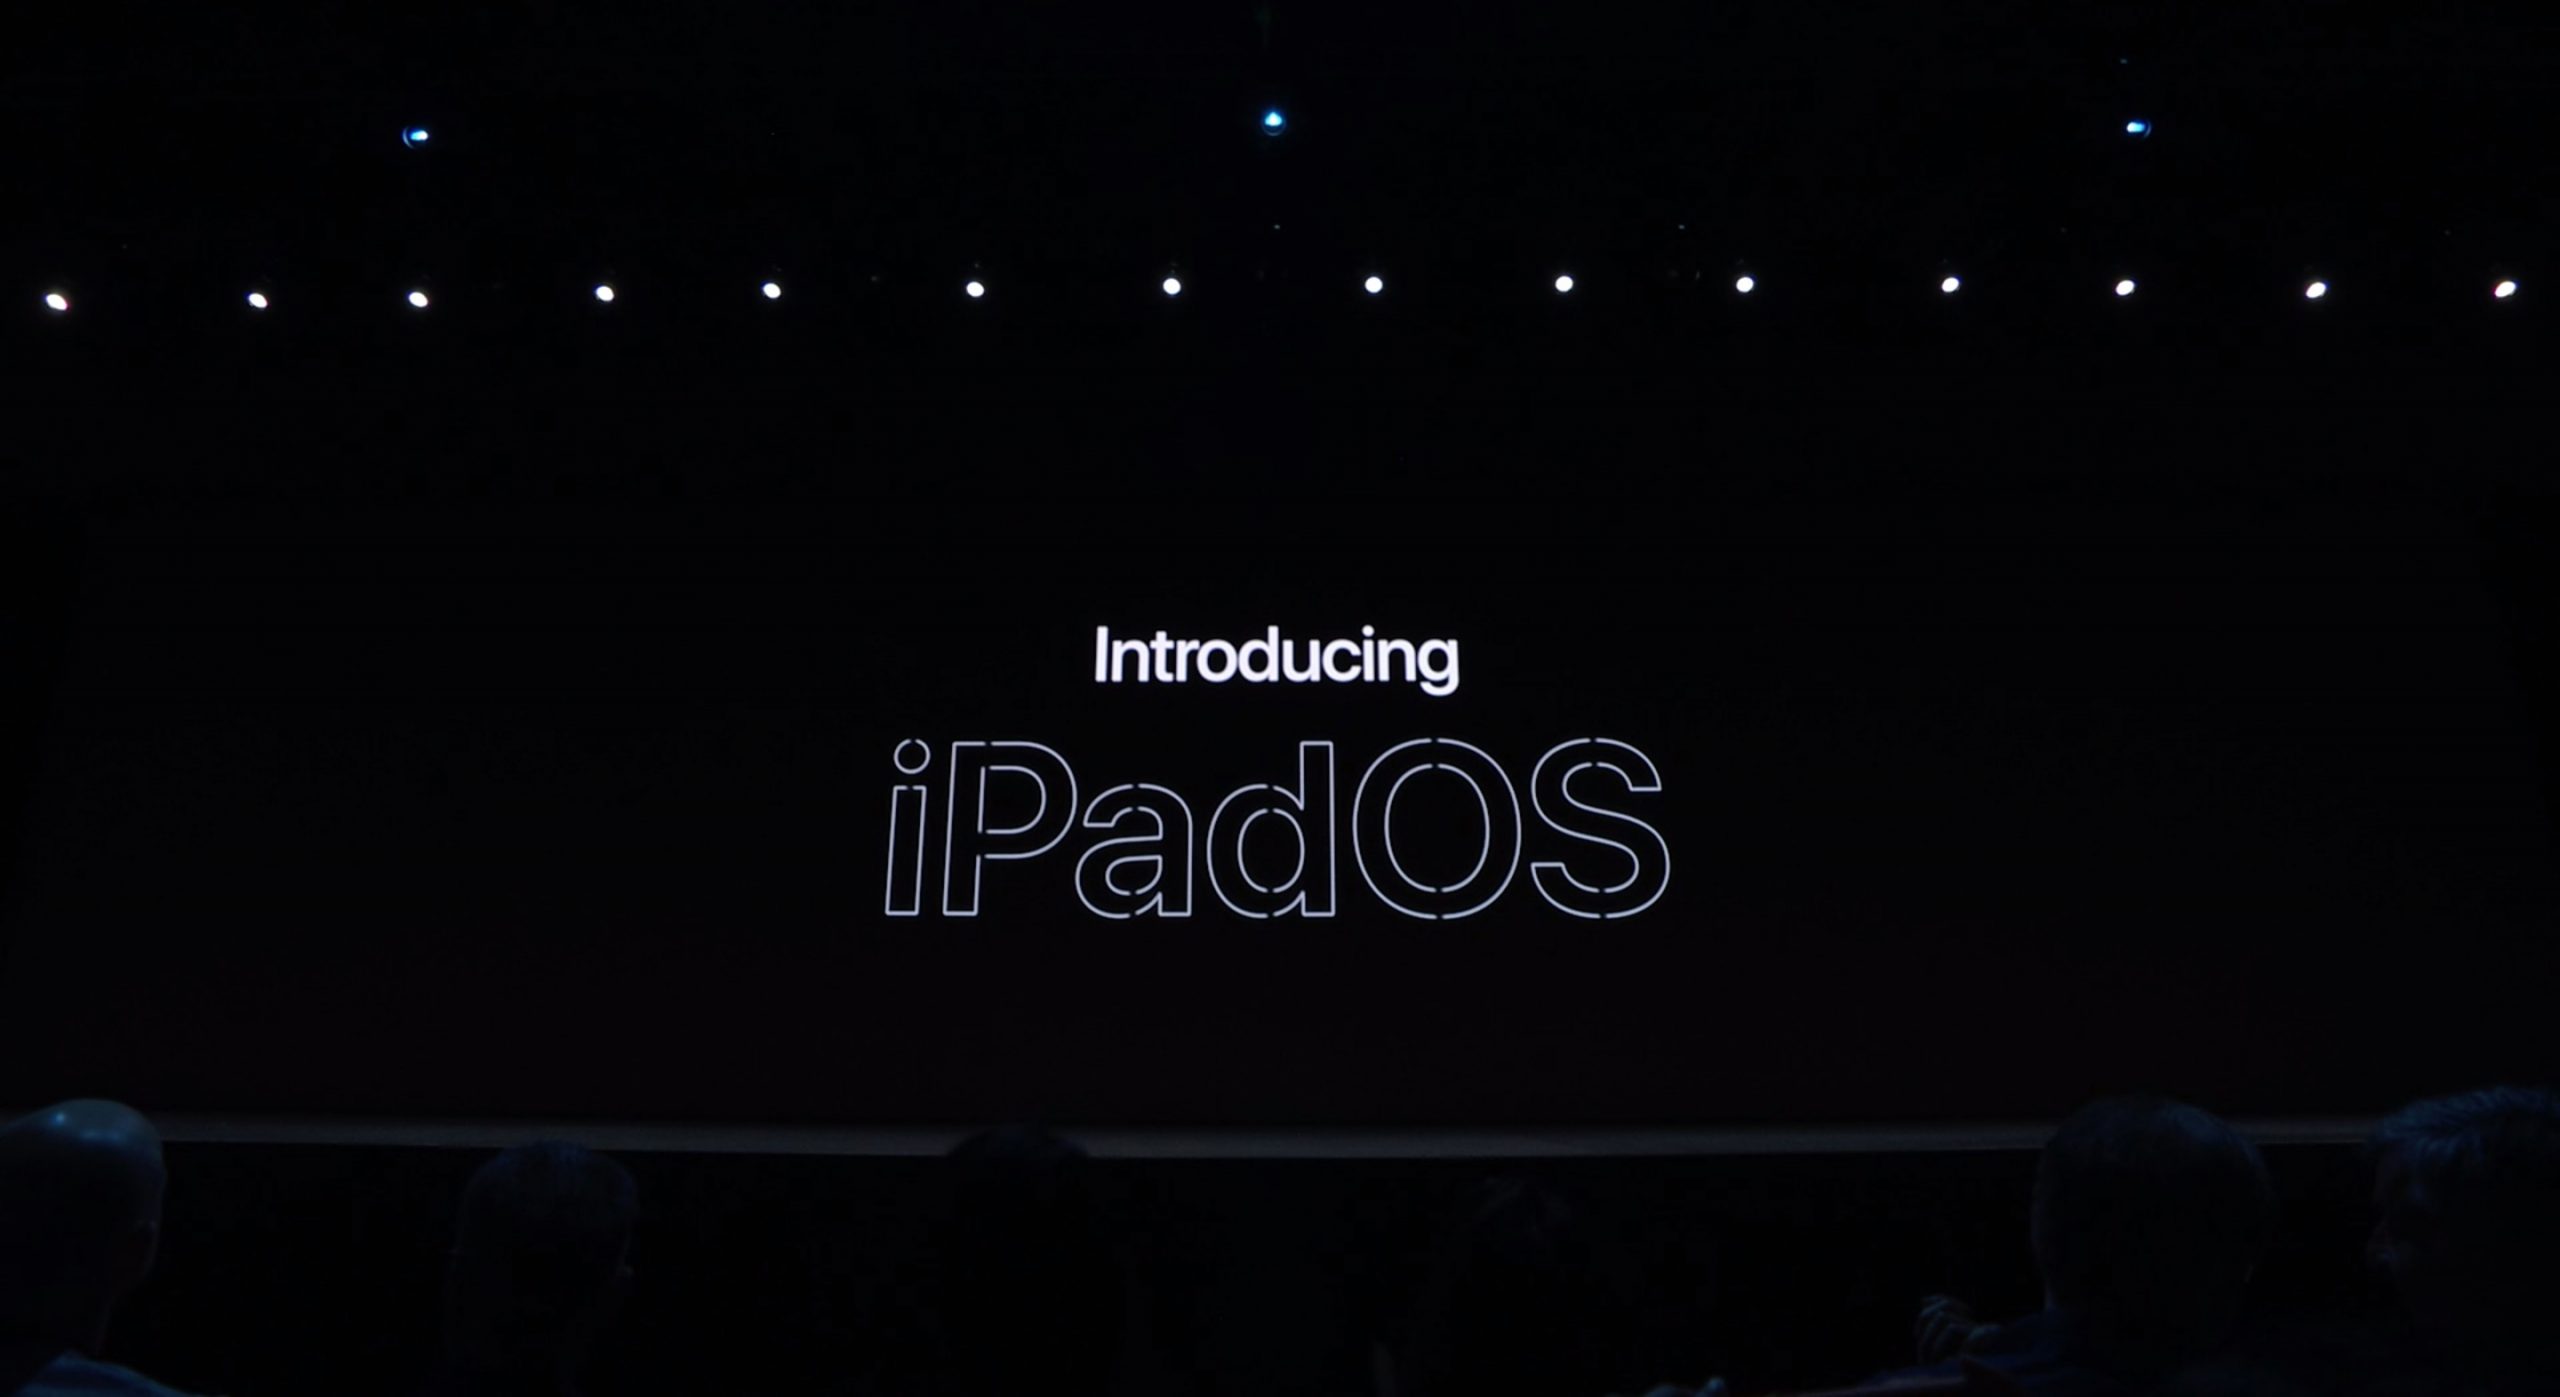 IPadOS er her, en ny måte å bruke iPad-en på